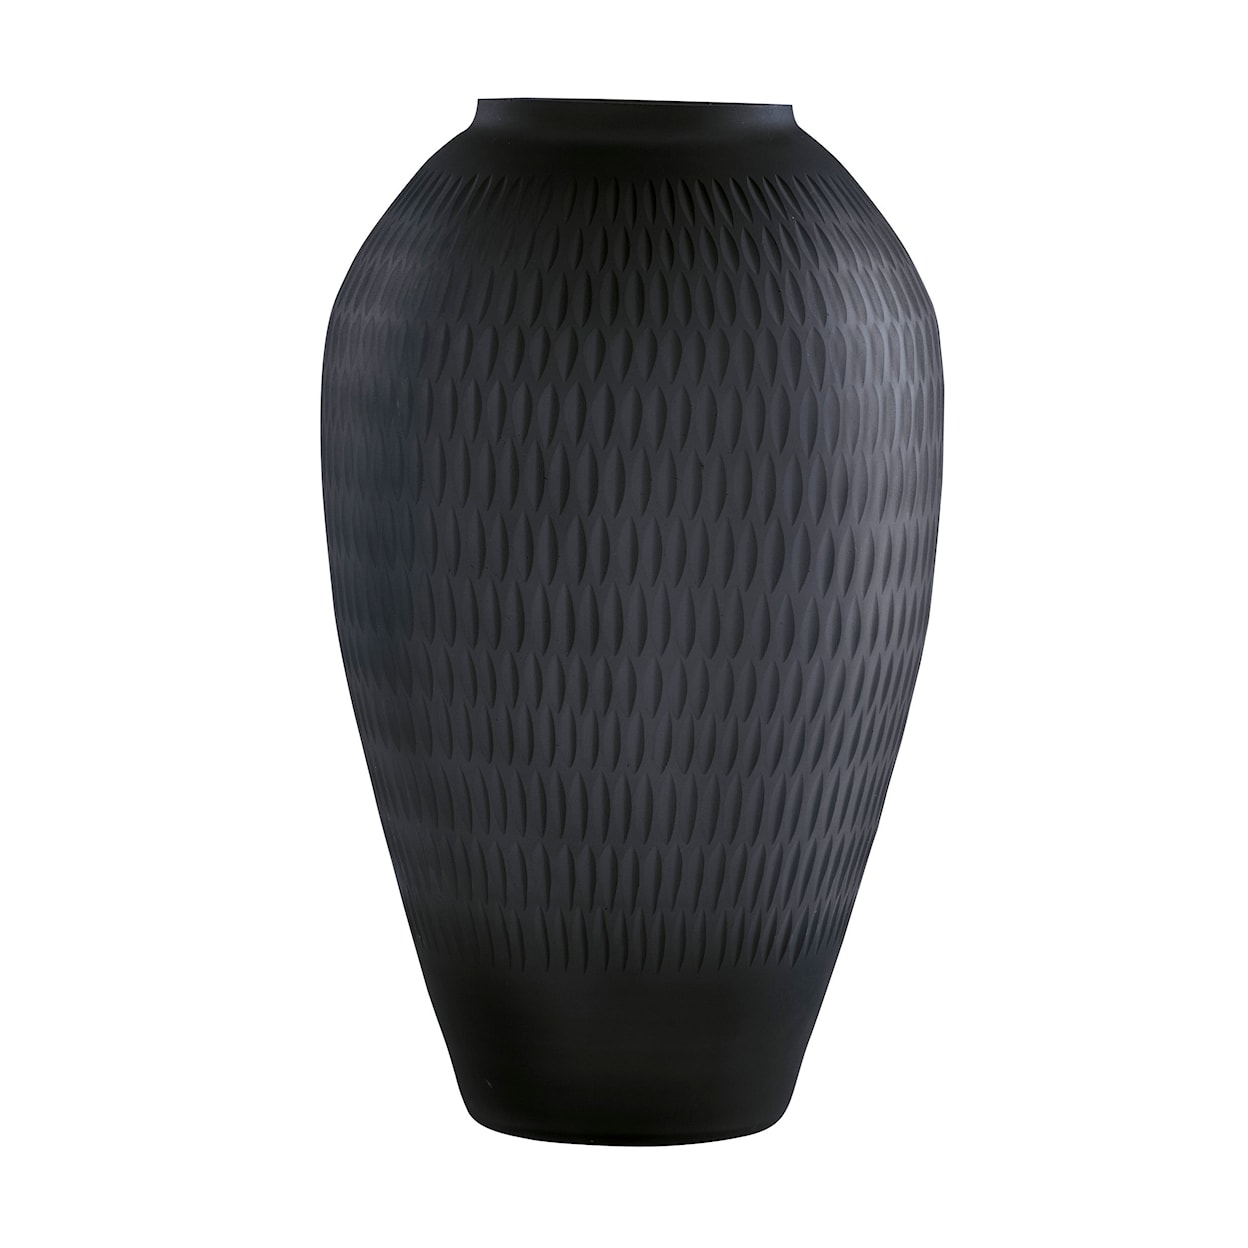 Signature Design Accents Etney Vase